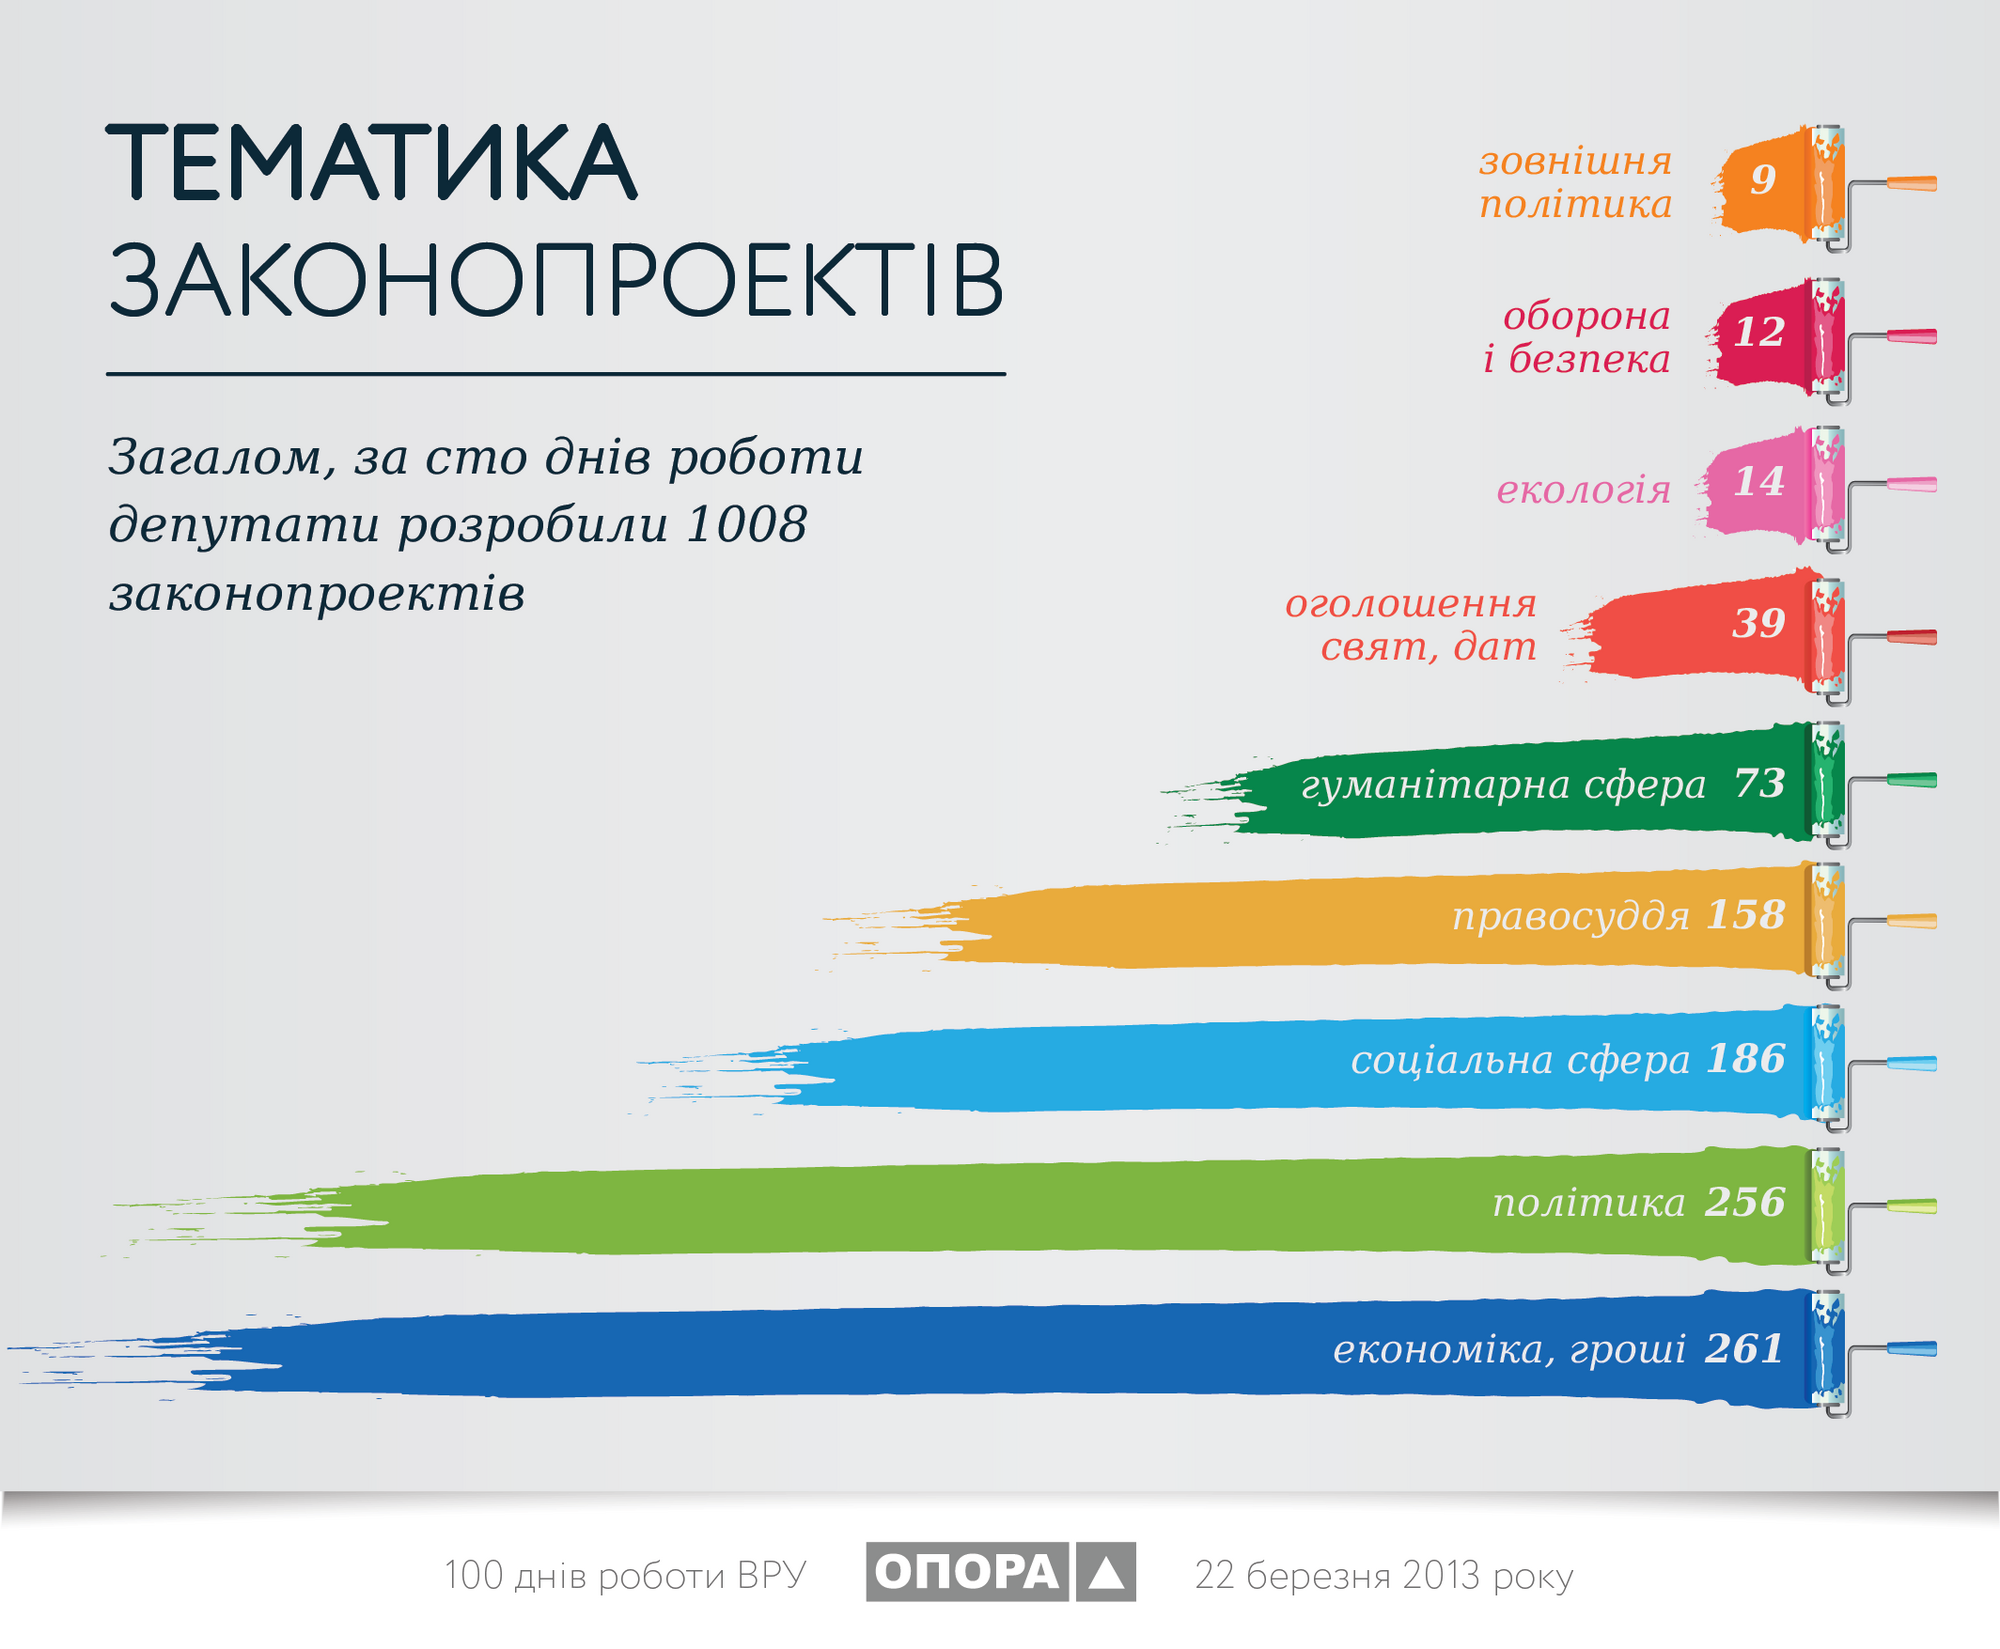 ОПОРА: за 100 дней самым активным был Яценюк